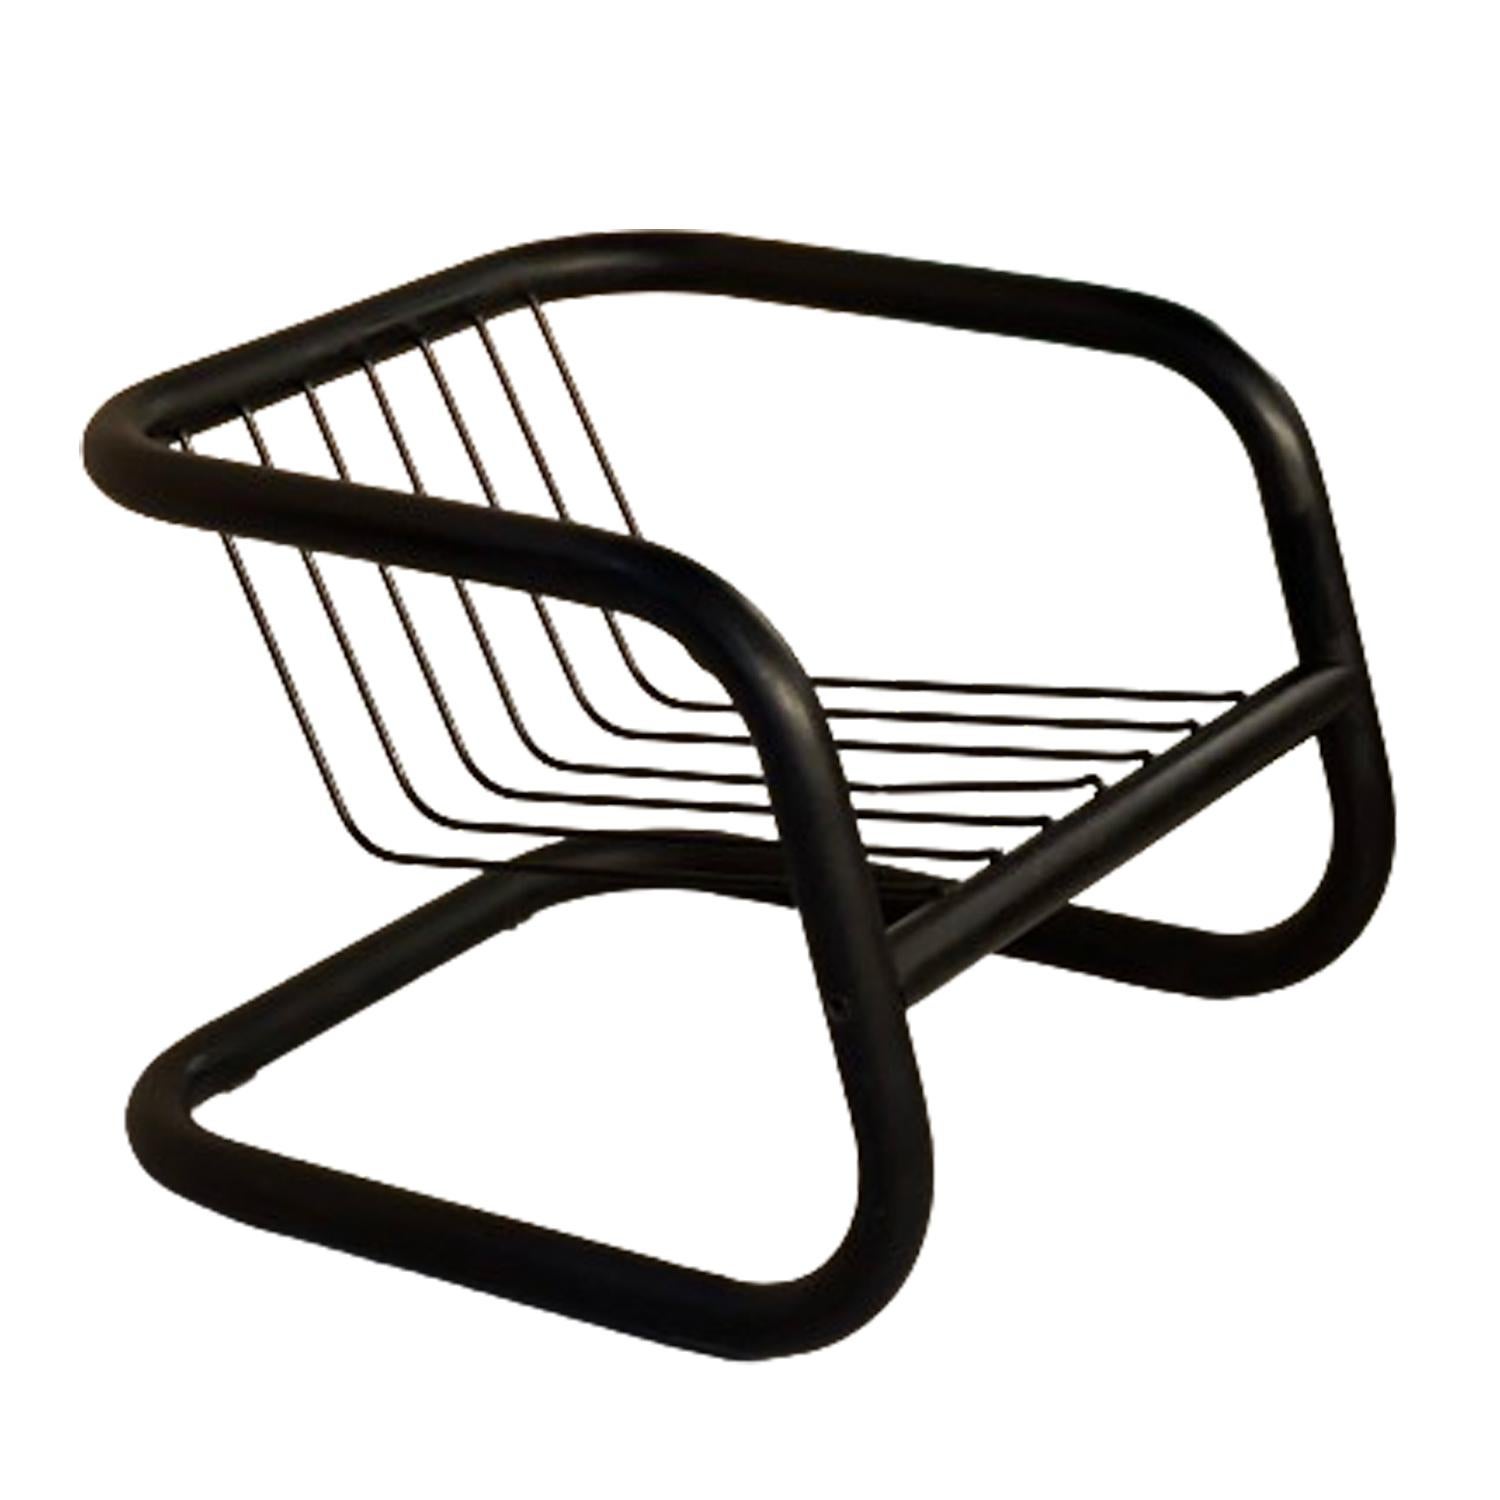 Rohrförmiger Sessel, entworfen von Geraldo de Barros für Hobjeto in den 70er Jahren.
Hergestellt aus schwarz lackiertem Metall.
Dies ist das perfekte Stück für einen Sammler. Die Kissen sind original. Sie tragen das Hobjeto Label, wie Sie auf dem